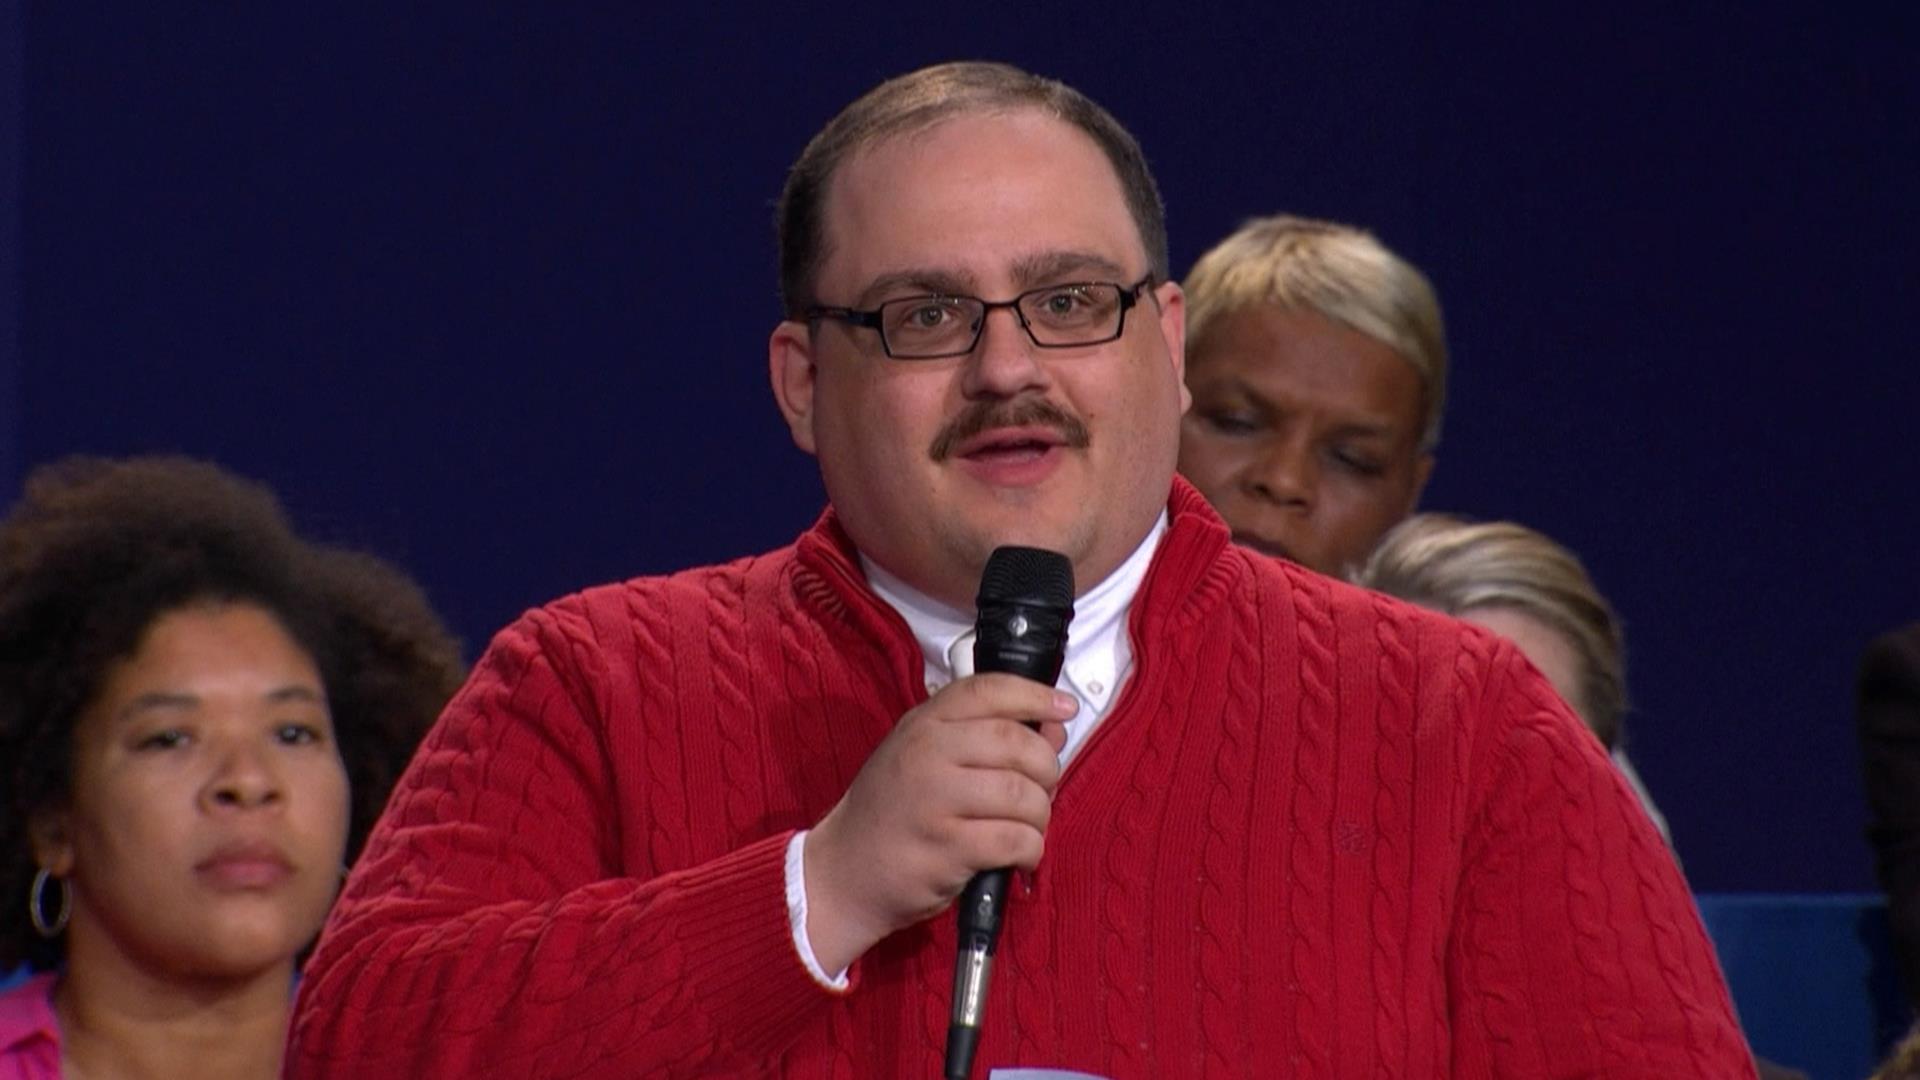 Man in the red sweater, Ken Bone, dubbed 'winner' of second ...